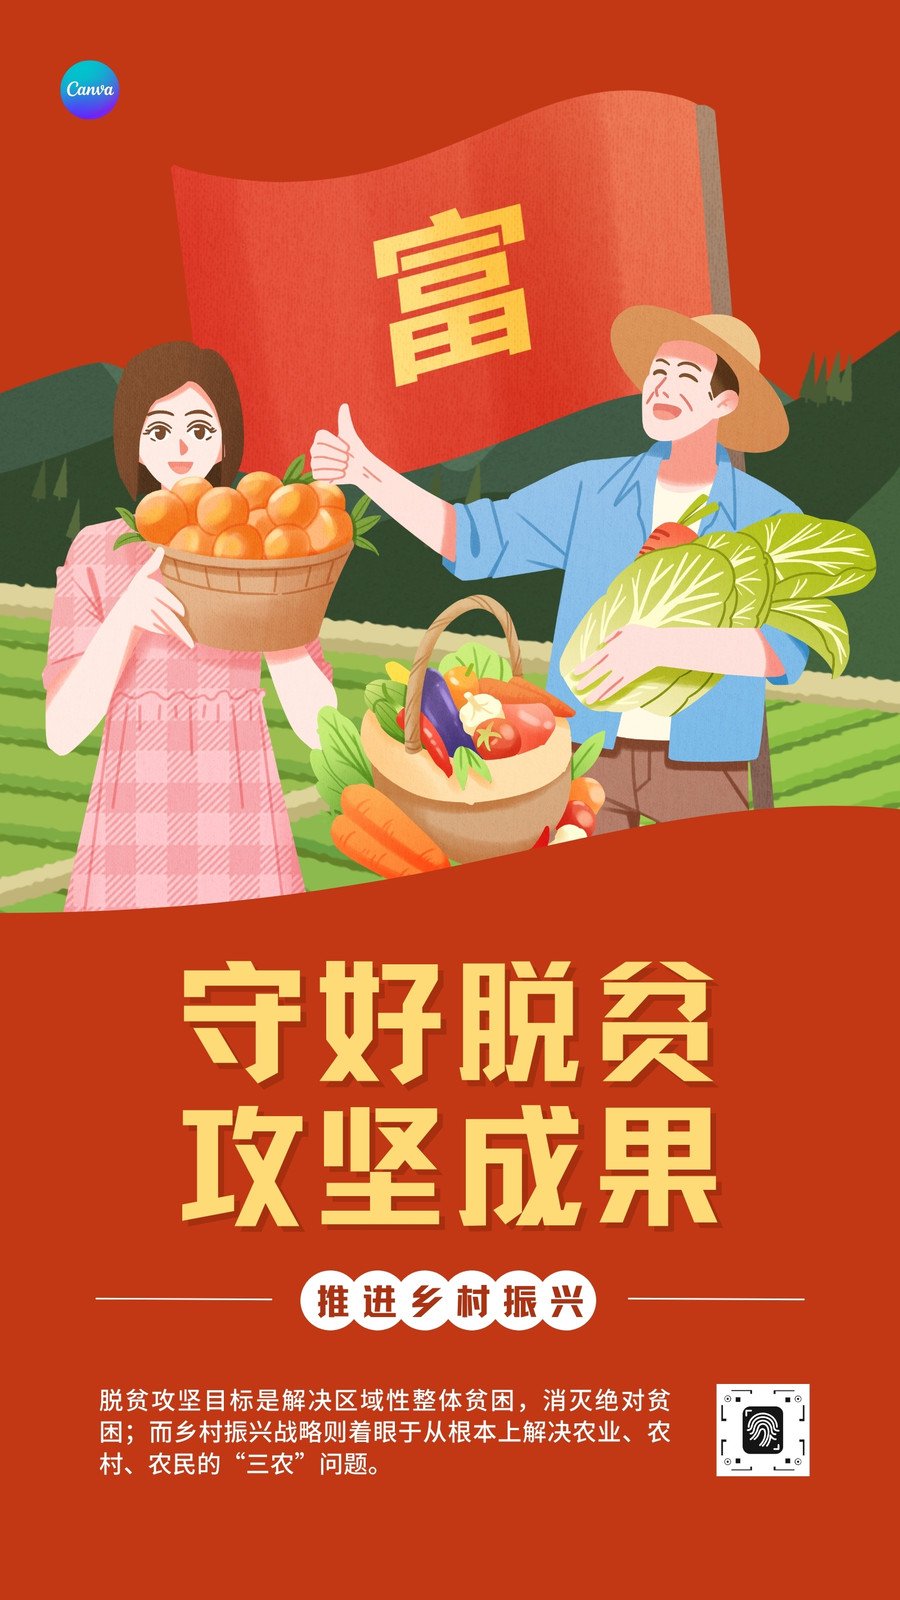 红黄色脱贫攻坚主题手绘插画手绘党政司法宣传中文手机海报